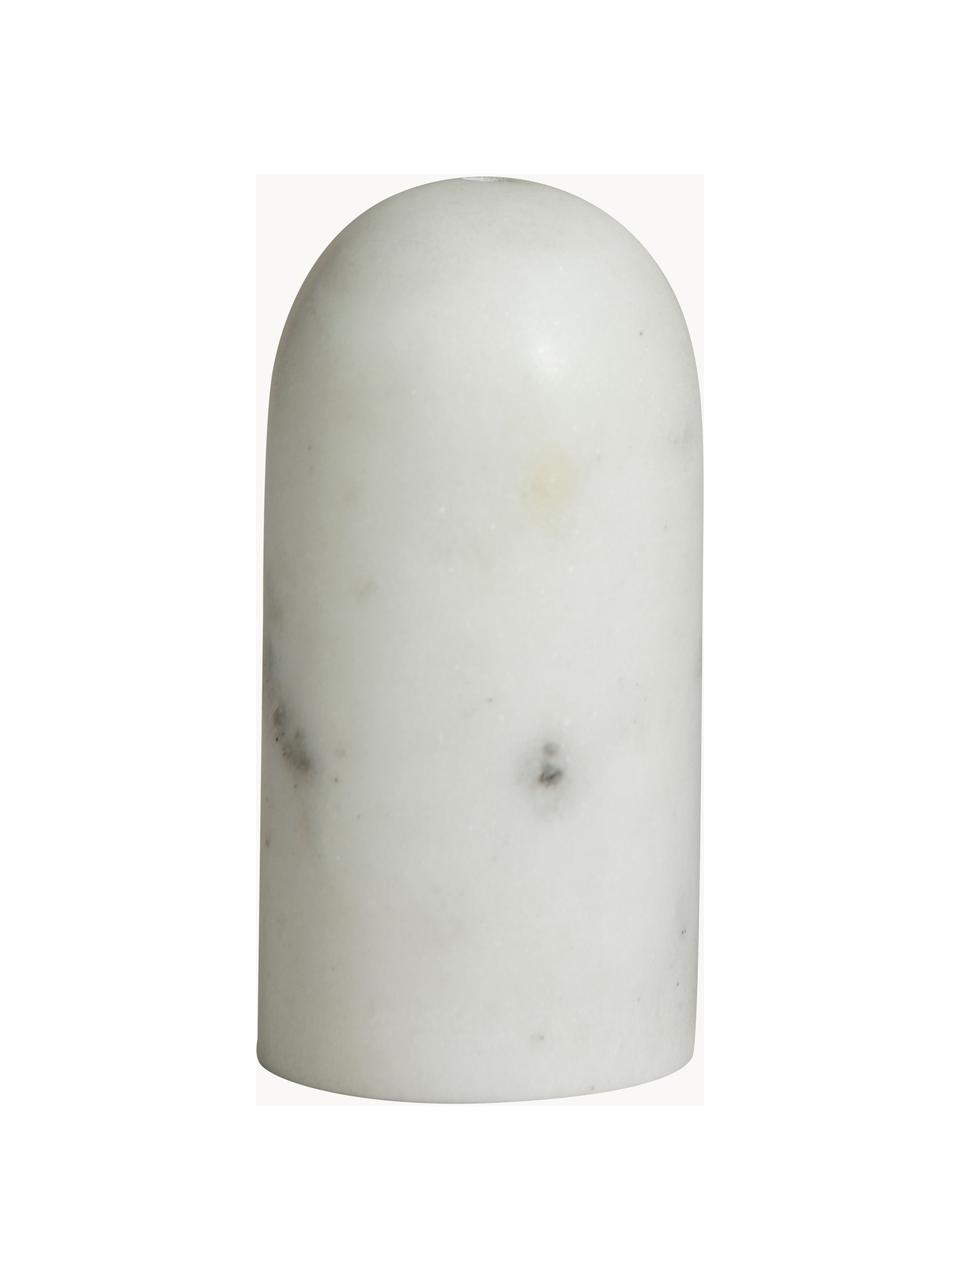 Marmor Salz- und Pfefferstreuer Isop, 2er-Set, Marmor, Weiß, marmoriert, Ø 4 x H 8 cm